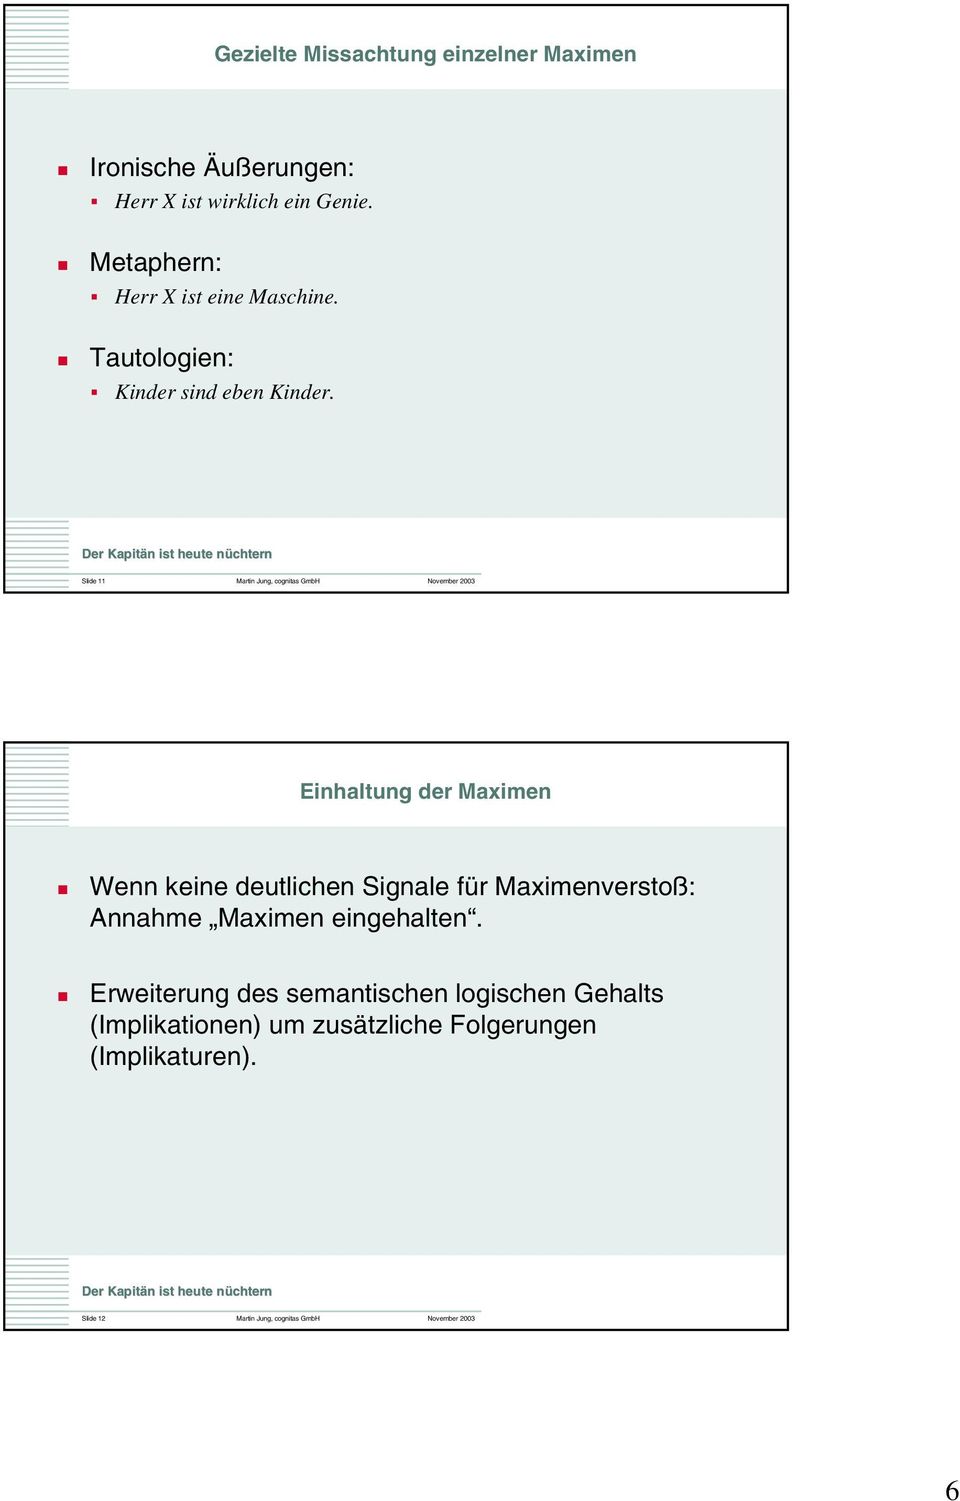 Slide 11 Martin Jung, cognitas GmbH November 2003 Einhaltung der Maximen Wenn keine deutlichen Signale für